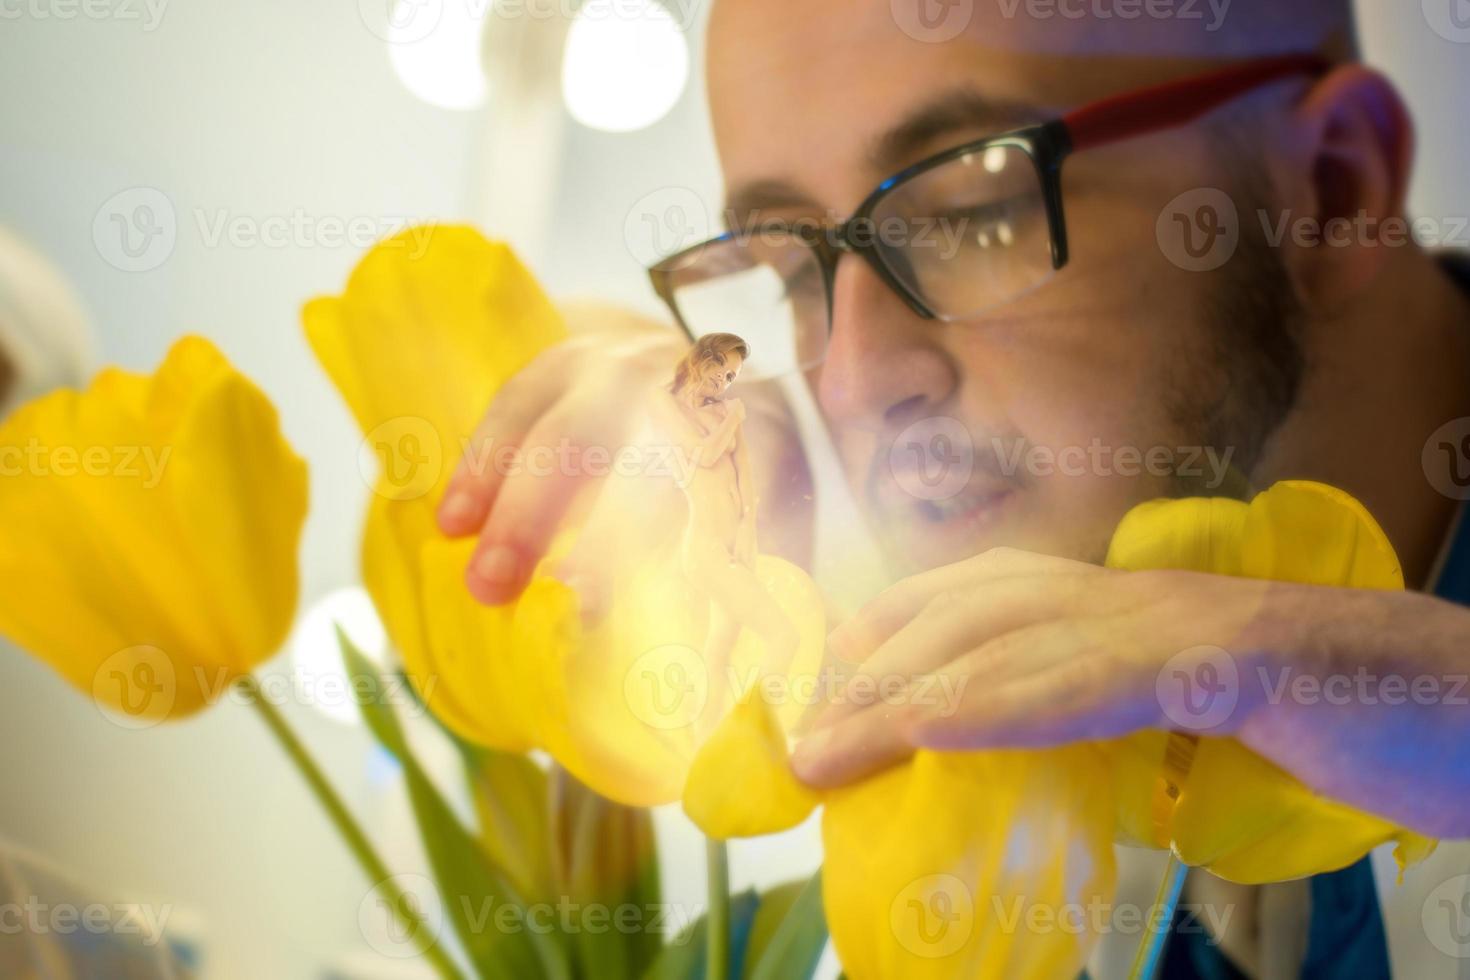 cientista bonito em óculos cresceu uma garota sexy na flor foto